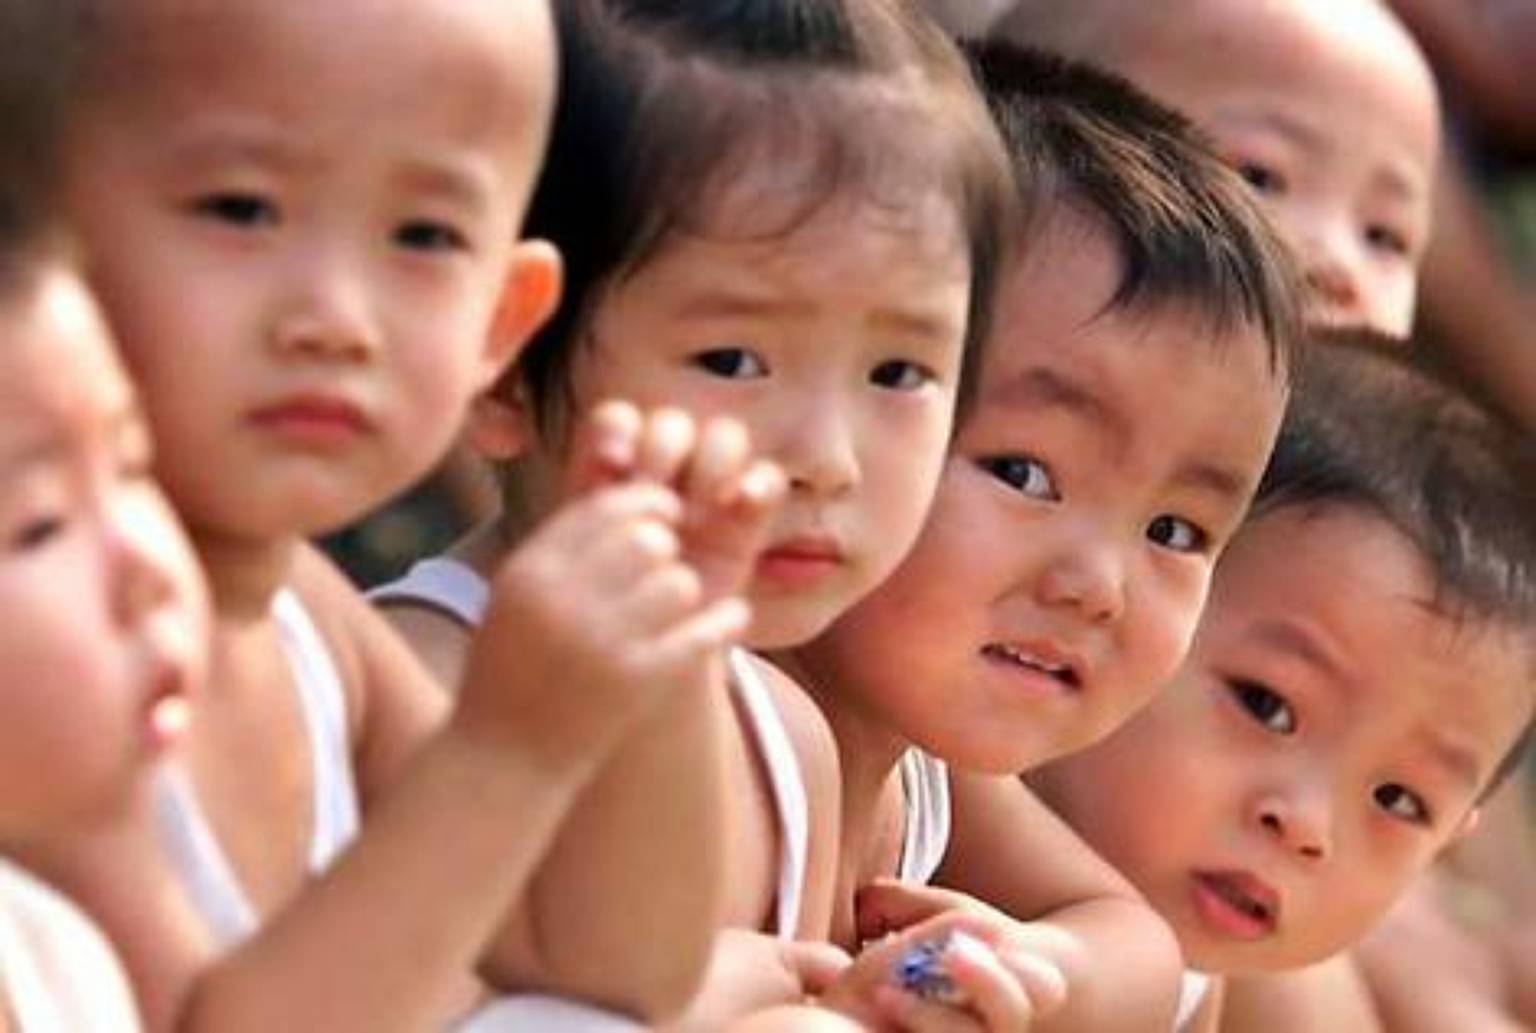 Tin đồn xảy ra bắt cóc trẻ em ở độ tuổi mẫu giáo tại Văn Quán, Hà Đông, Hà Nội khiến dư luận xôn xao